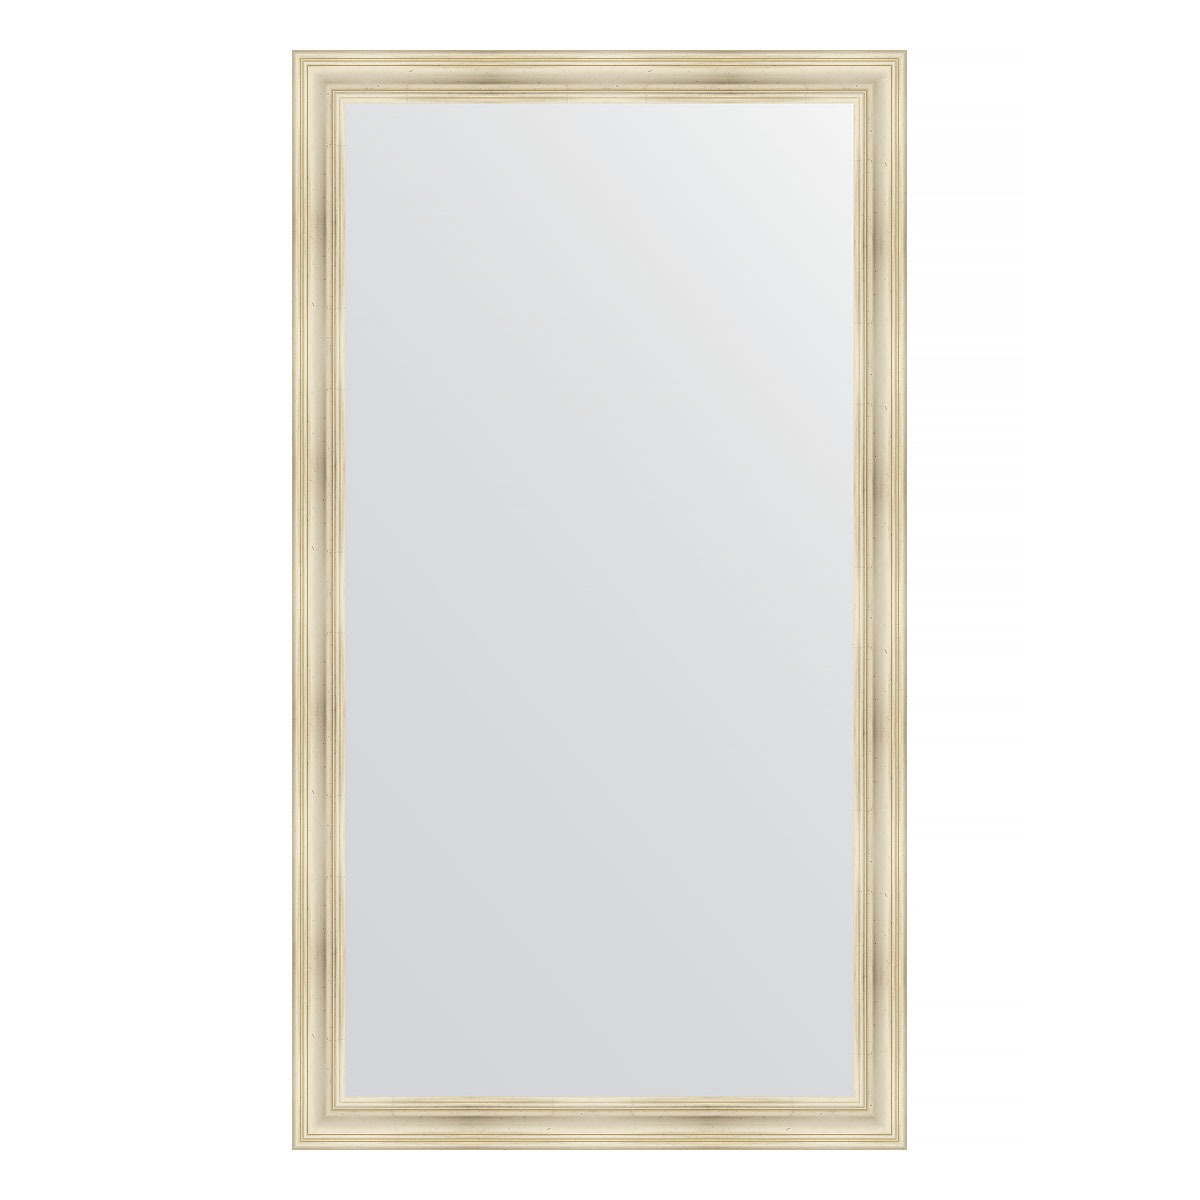 Зеркало напольное в багетной раме Evoform травленое серебро 99 мм 114x204 см зеркало напольное с гравировкой в багетной раме травленое золото 99 мм 114x204 см